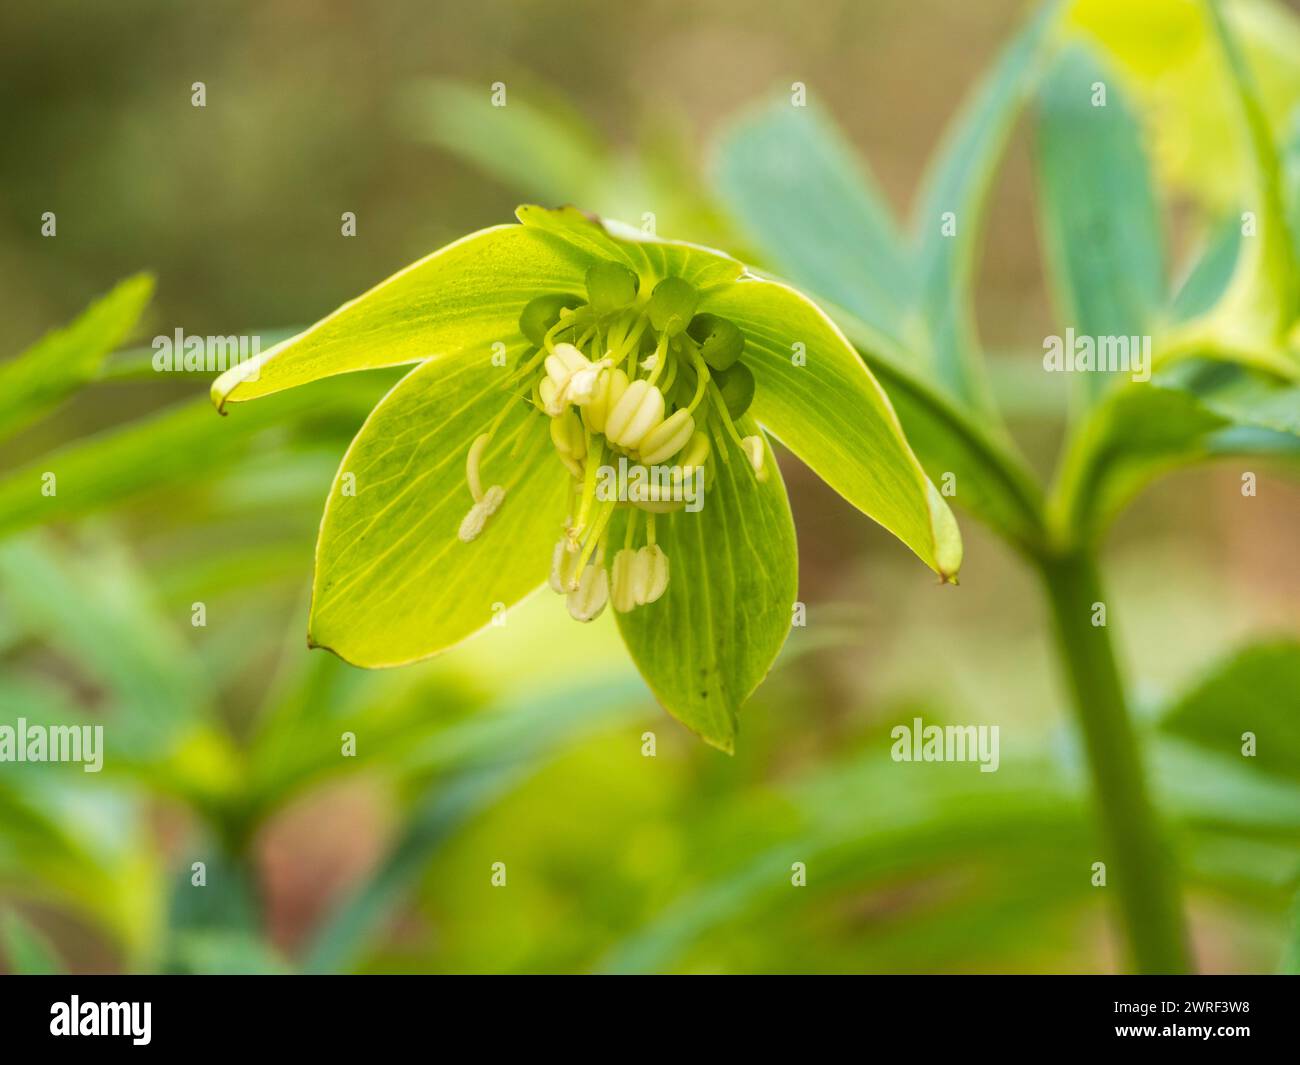 Nicken, Spätwinter auf die grüne Blüte des frühen Frühlings der harten, einheimischen Wildblumen- und Gartenpflanze Helleborus viridis, grüner Helleborus Stockfoto